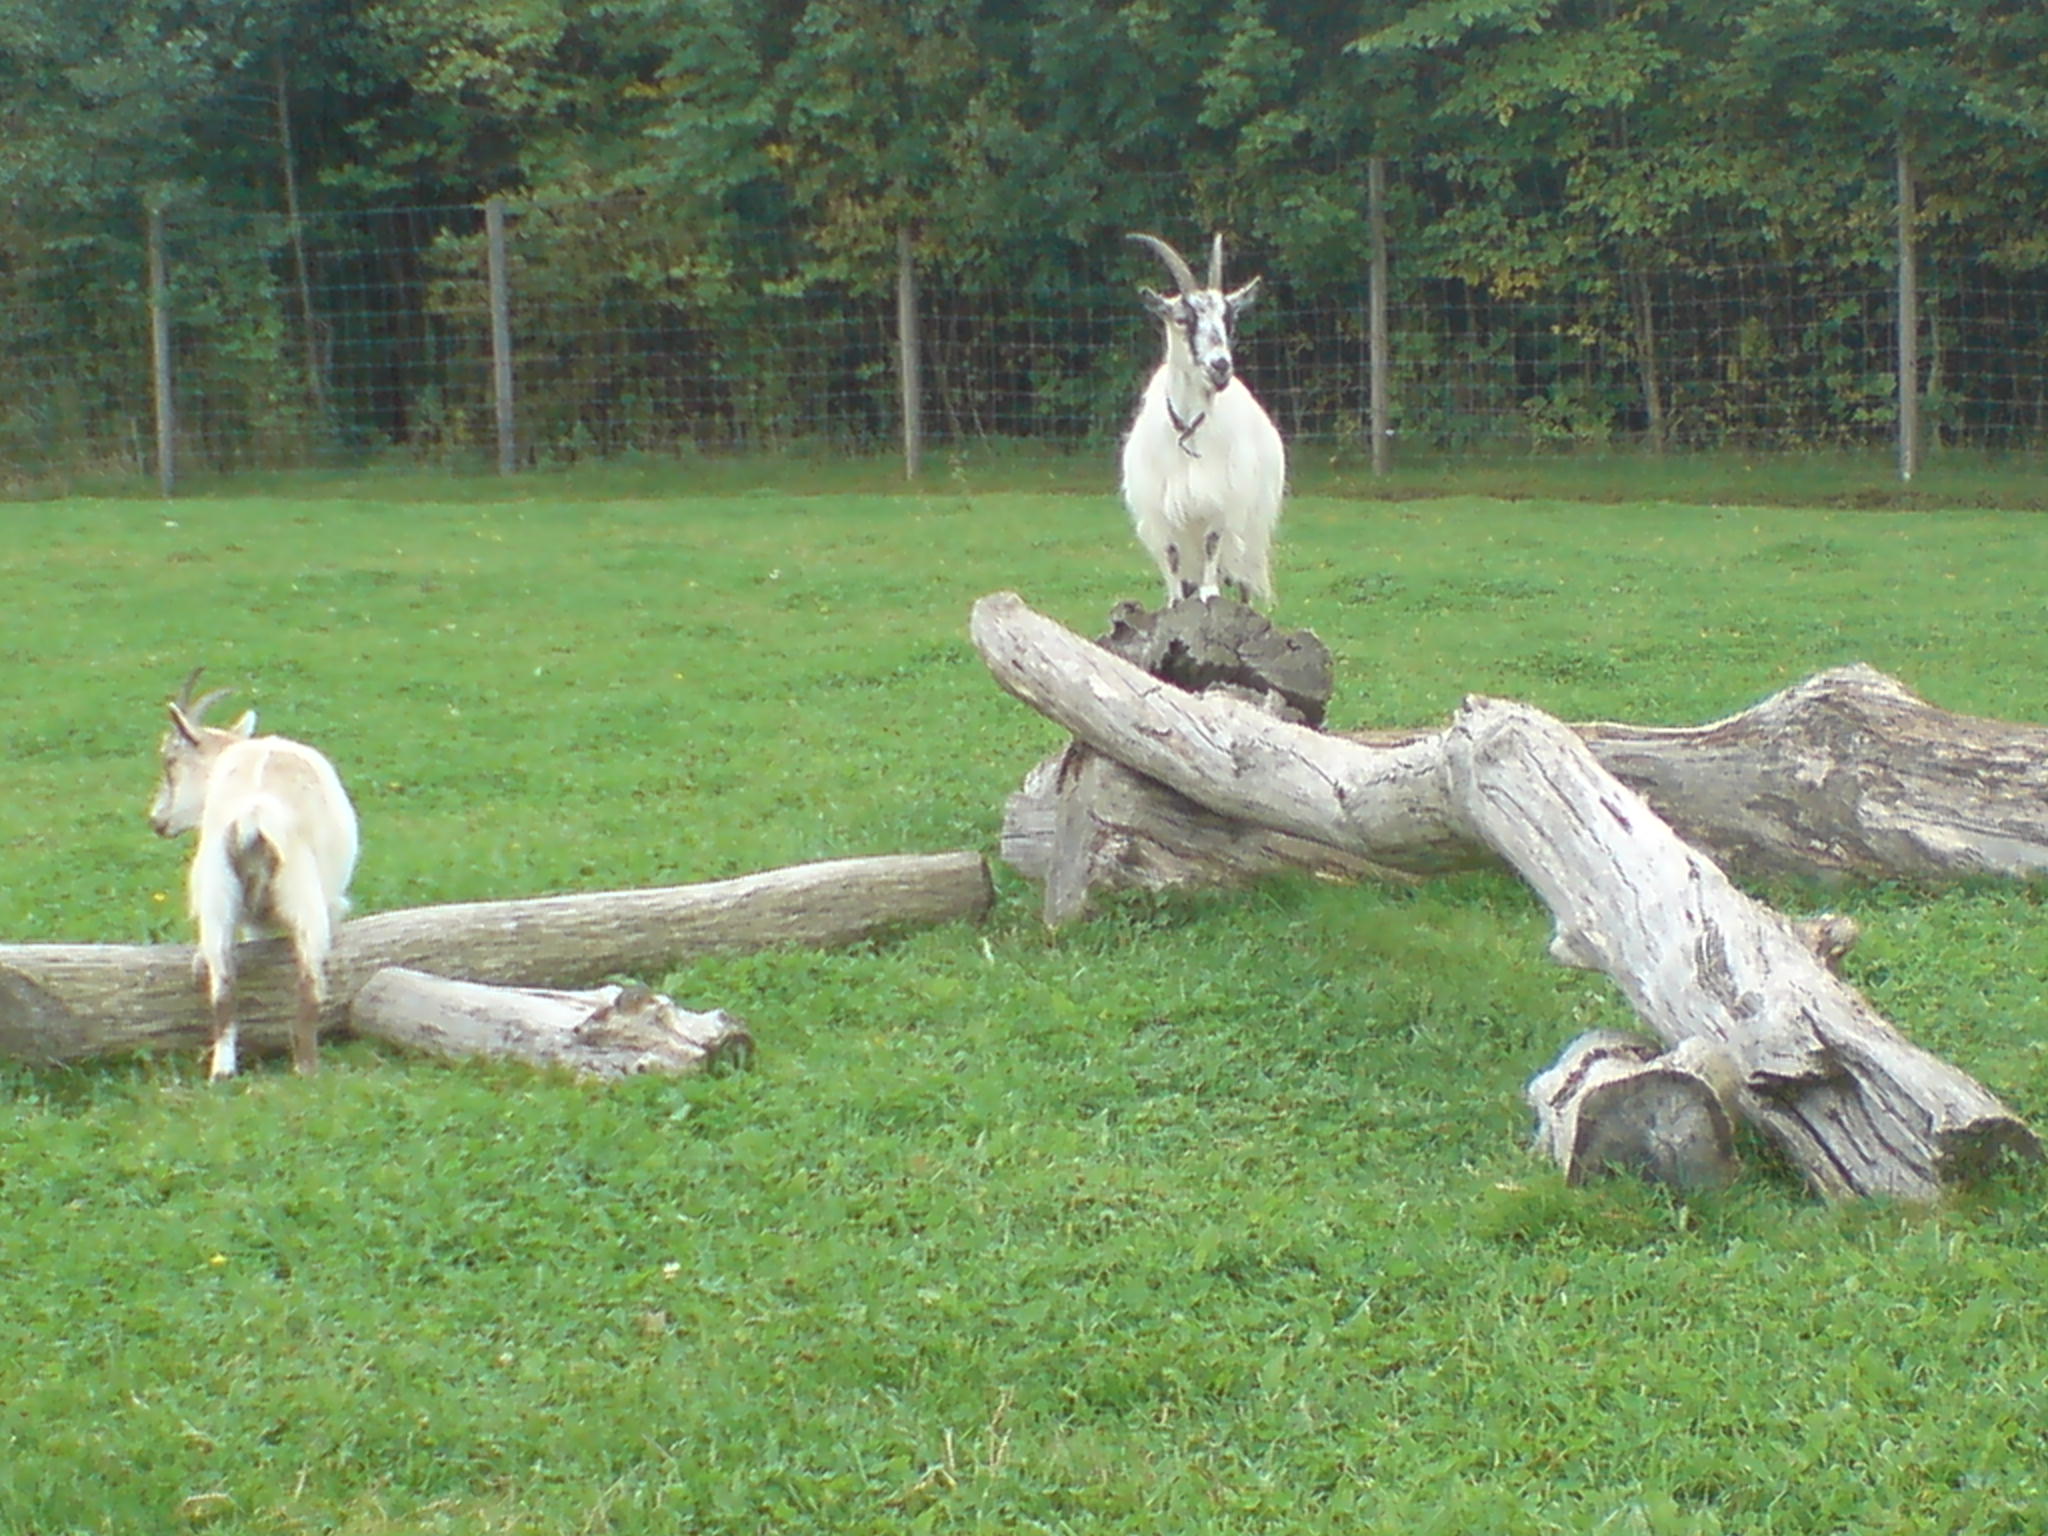 Goat standing on fallen tree trunk